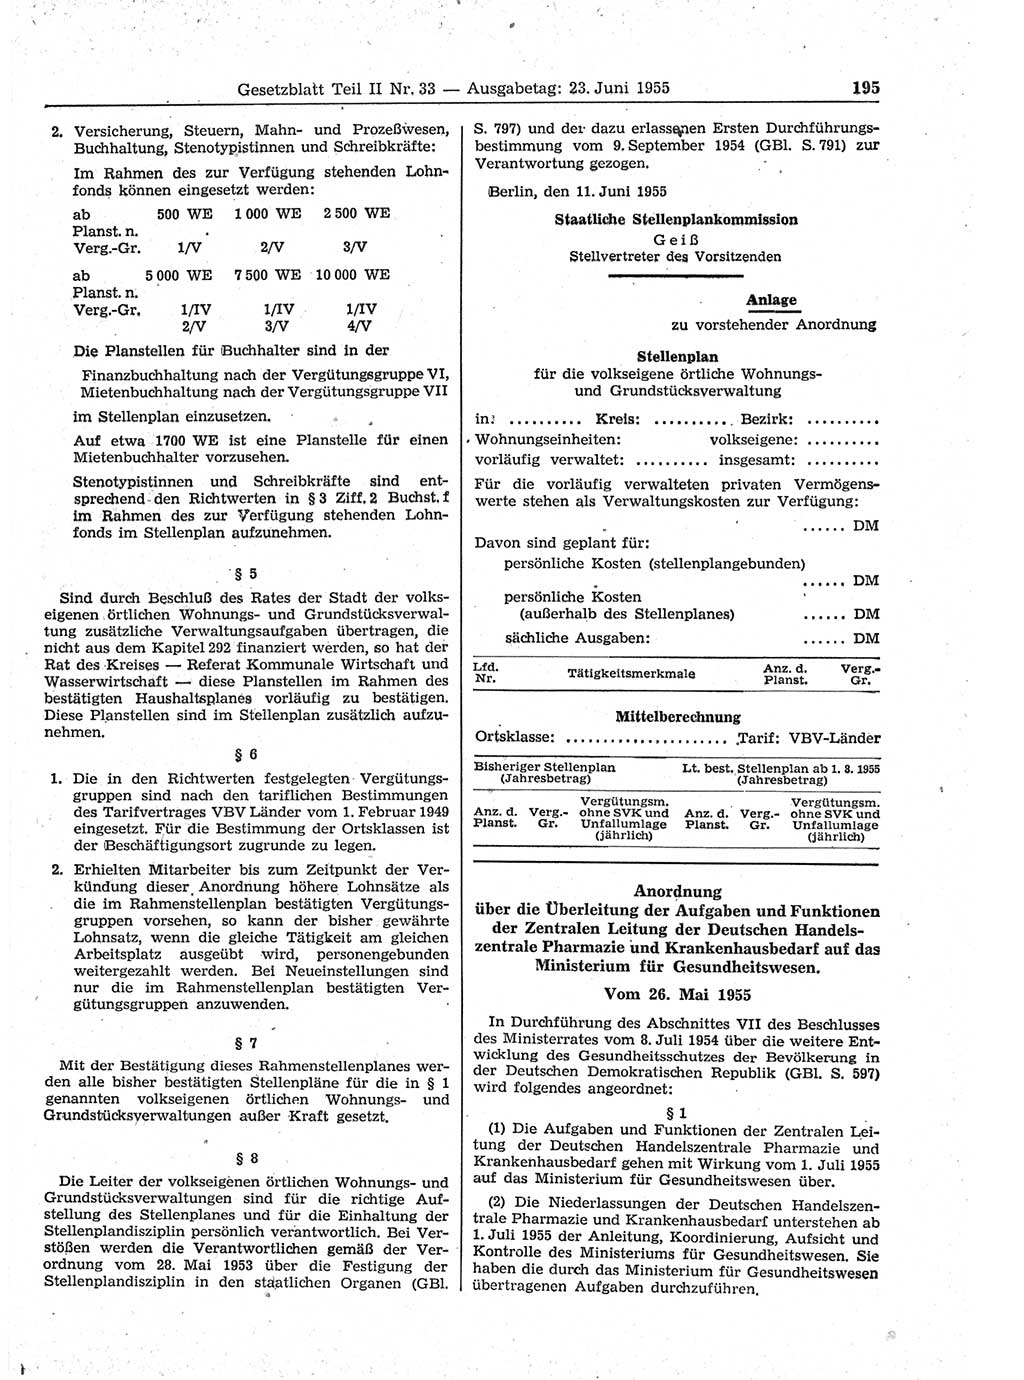 Gesetzblatt (GBl.) der Deutschen Demokratischen Republik (DDR) Teil ⅠⅠ 1955, Seite 195 (GBl. DDR ⅠⅠ 1955, S. 195)